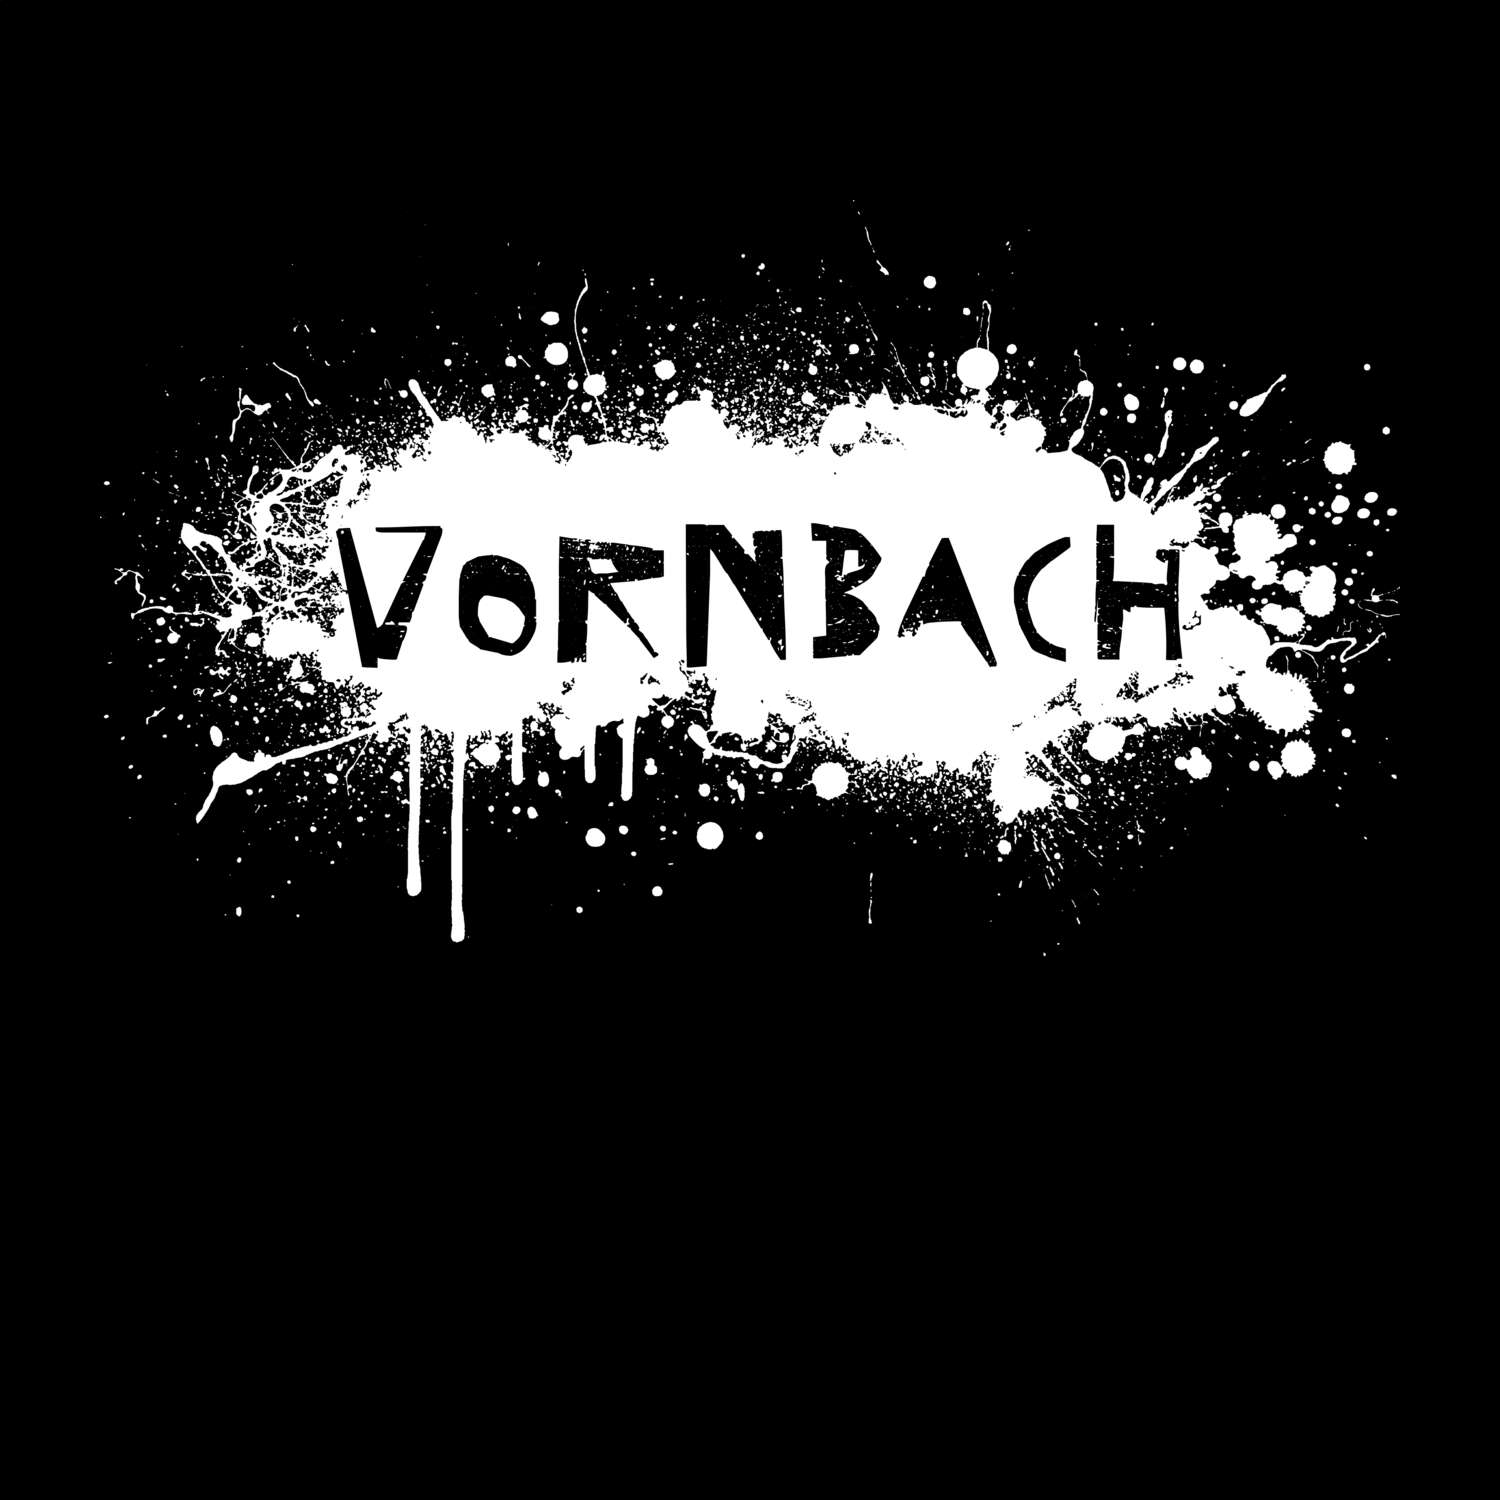 Vornbach T-Shirt »Paint Splash Punk«